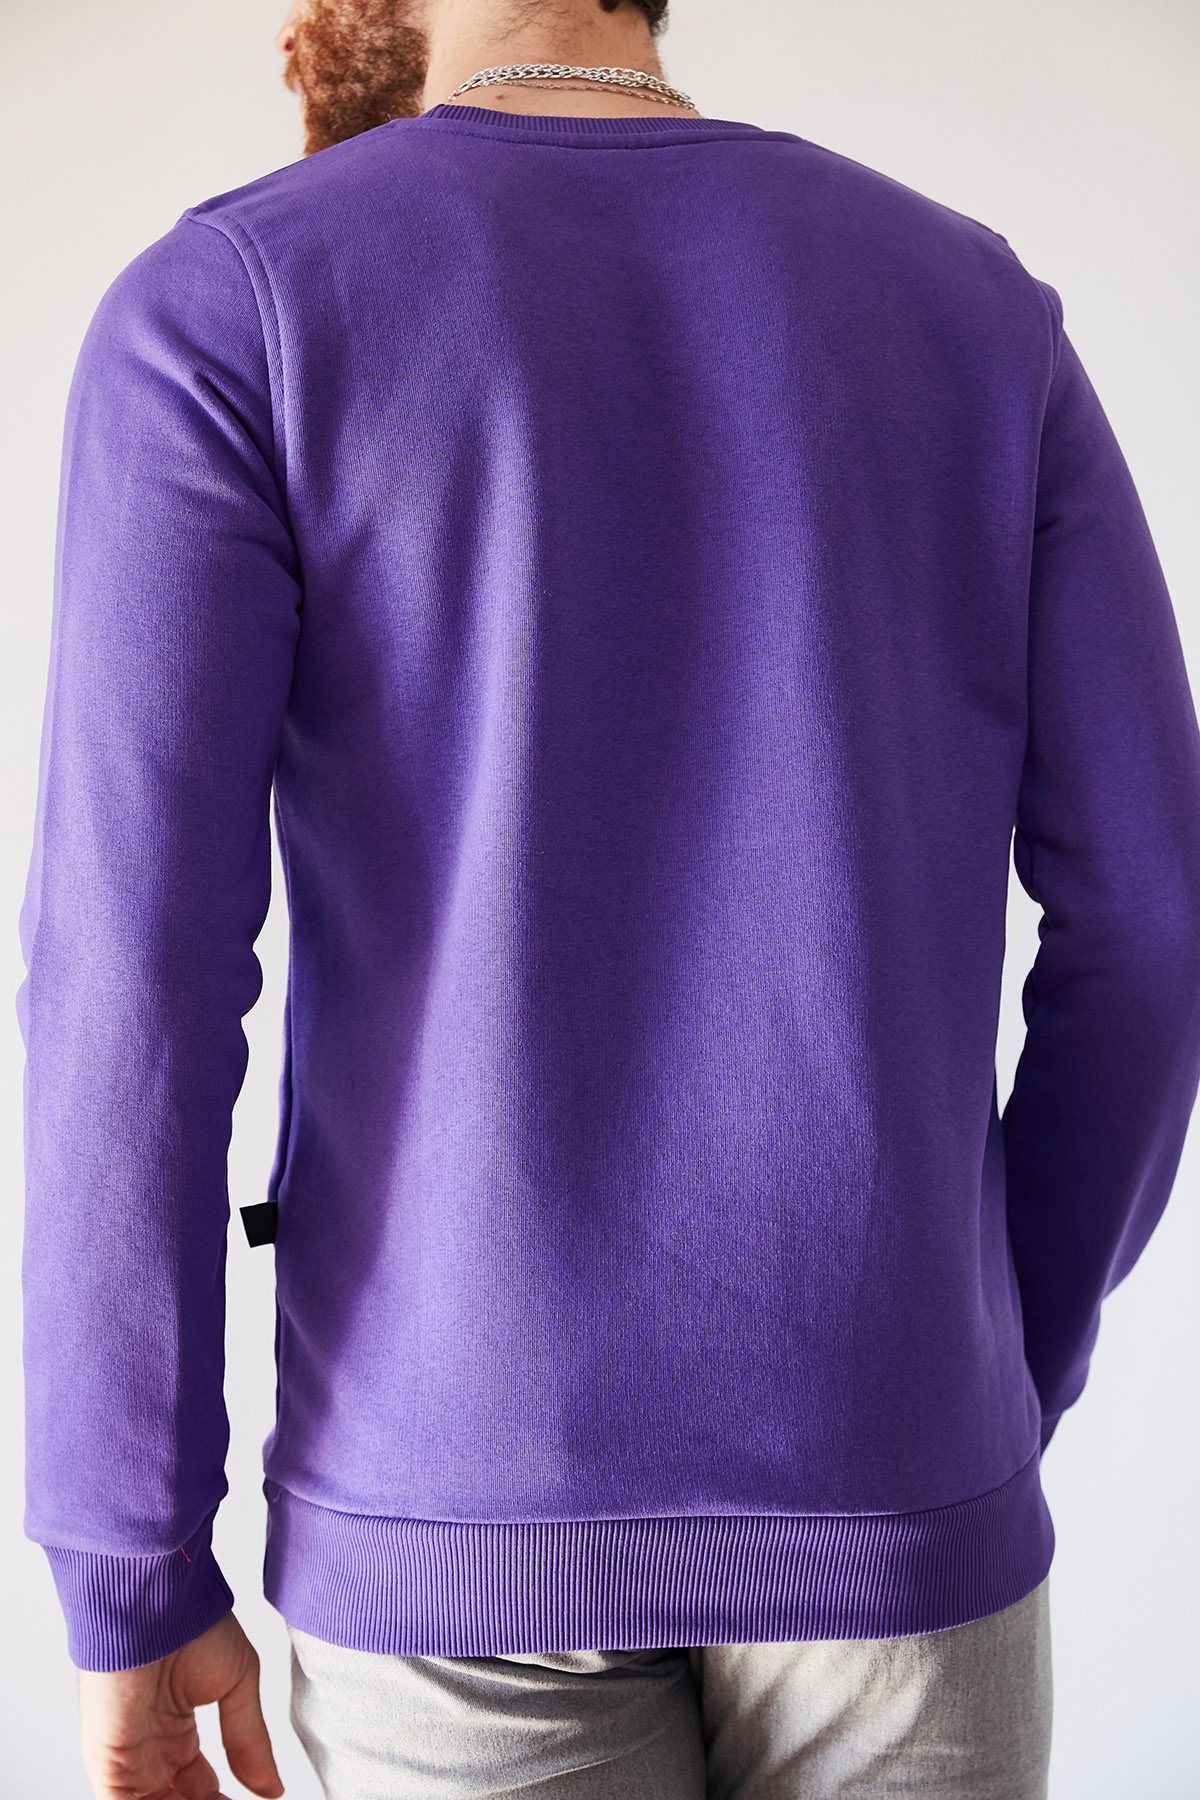 Mor Basic Sweatshirt 1KXE8-44236-06 - 3